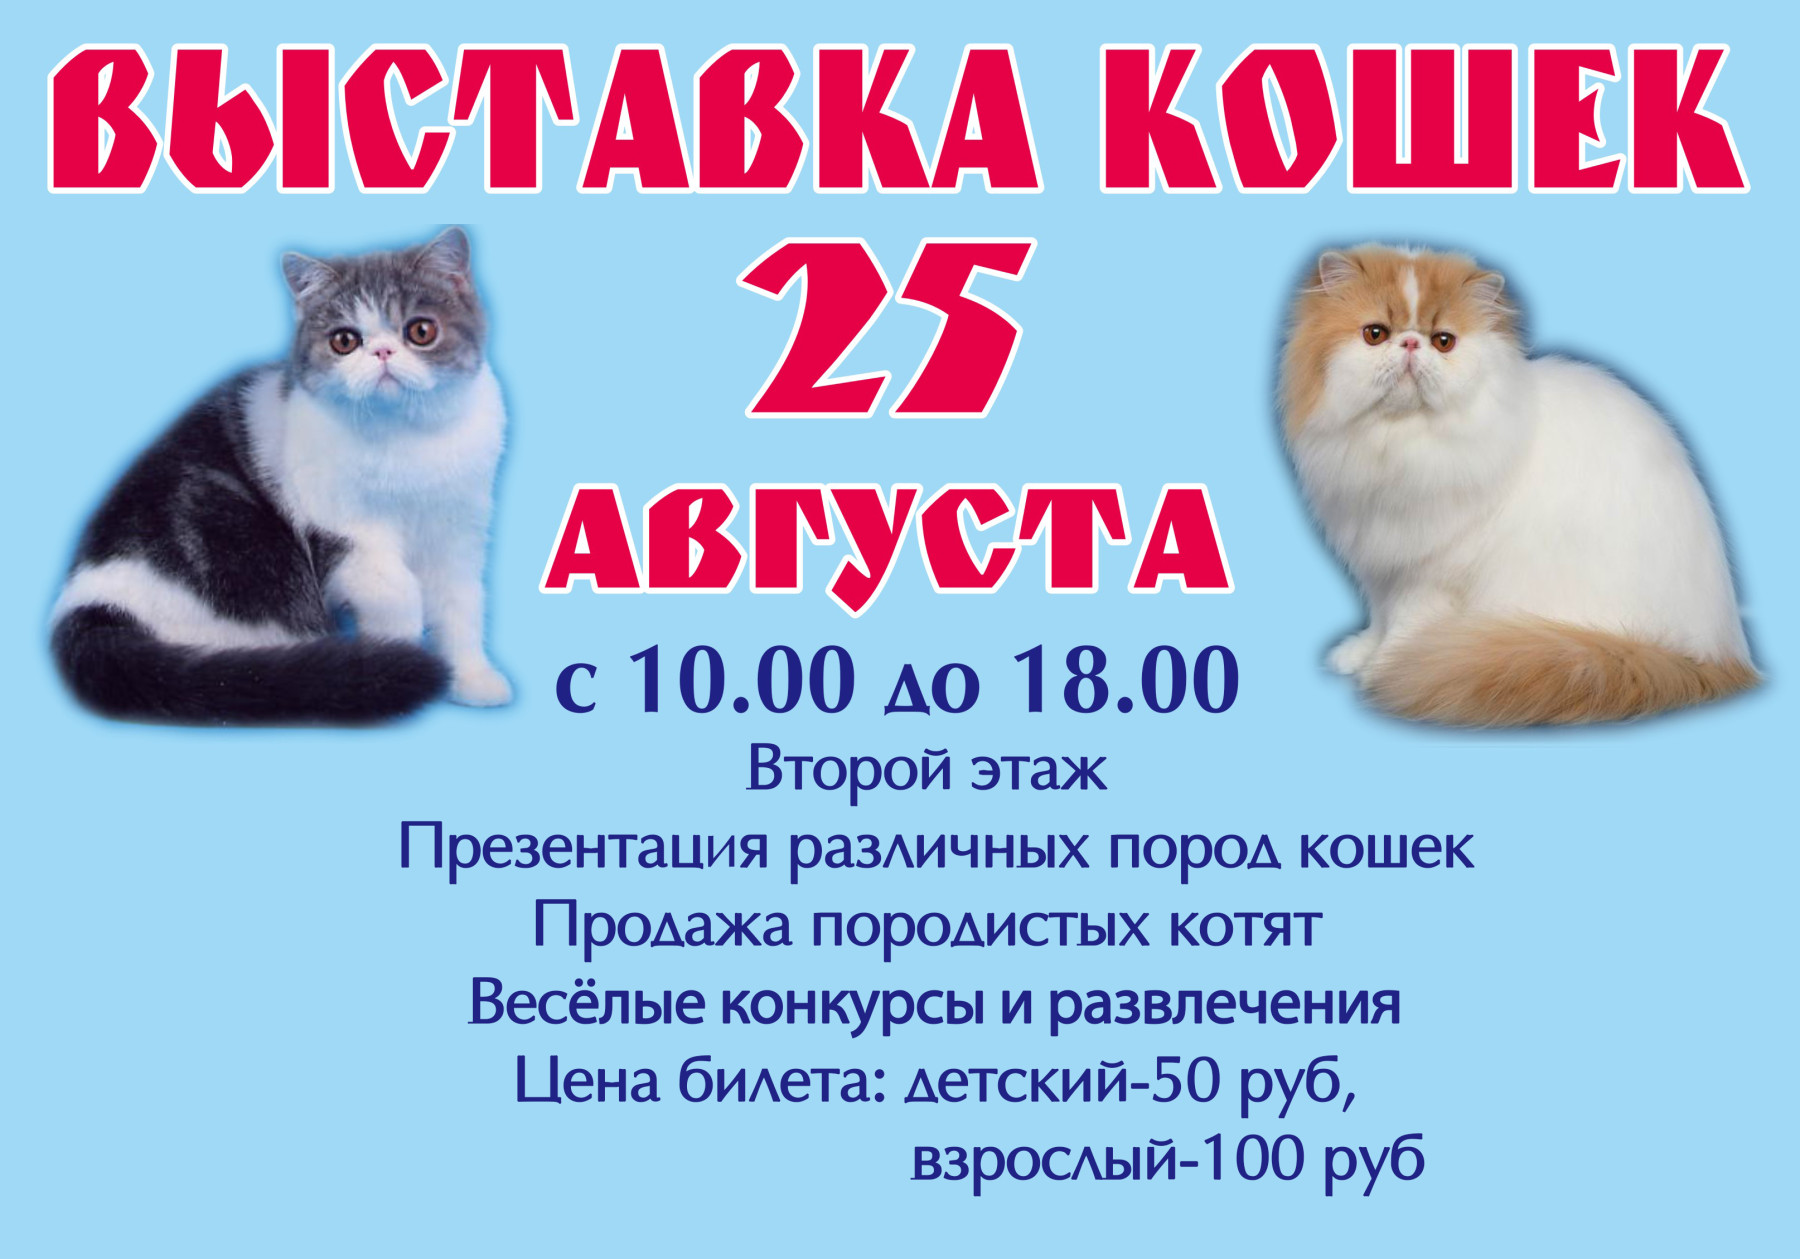 Купить кошку в кемерово. Реклама котят на выставку кошек. Выставка кошек афиша. Выставка кошек Барнаул. Выставка продажа кошек.